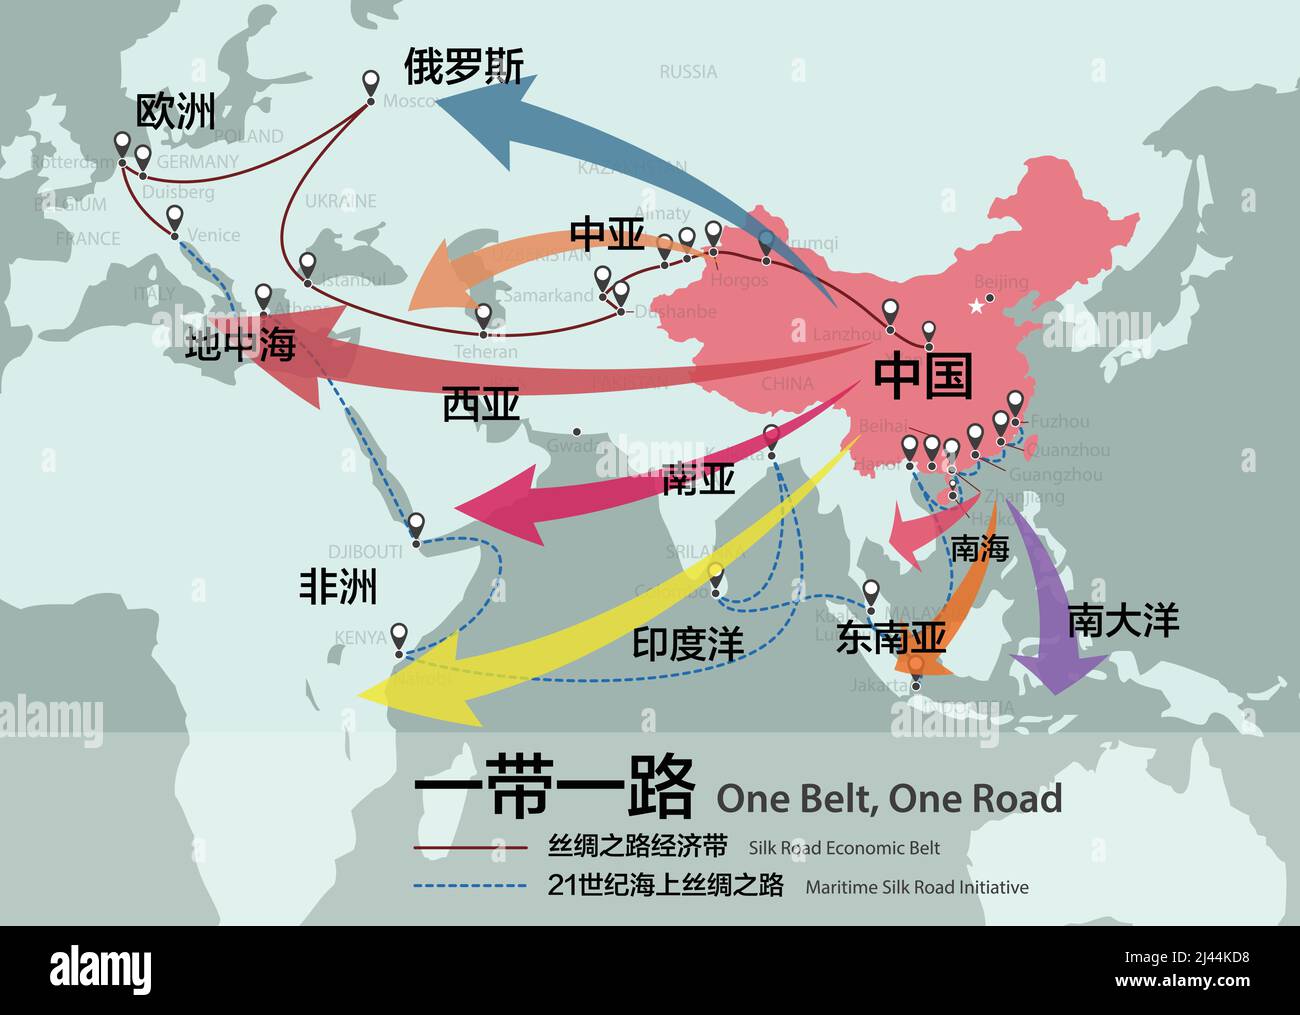 One Belt, One Road, investissement stratégique chinois dans la carte du 21st siècle. Les mots chinois sur la carte sont le nom comme la chine, une ceinture une route, l'UE Illustration de Vecteur